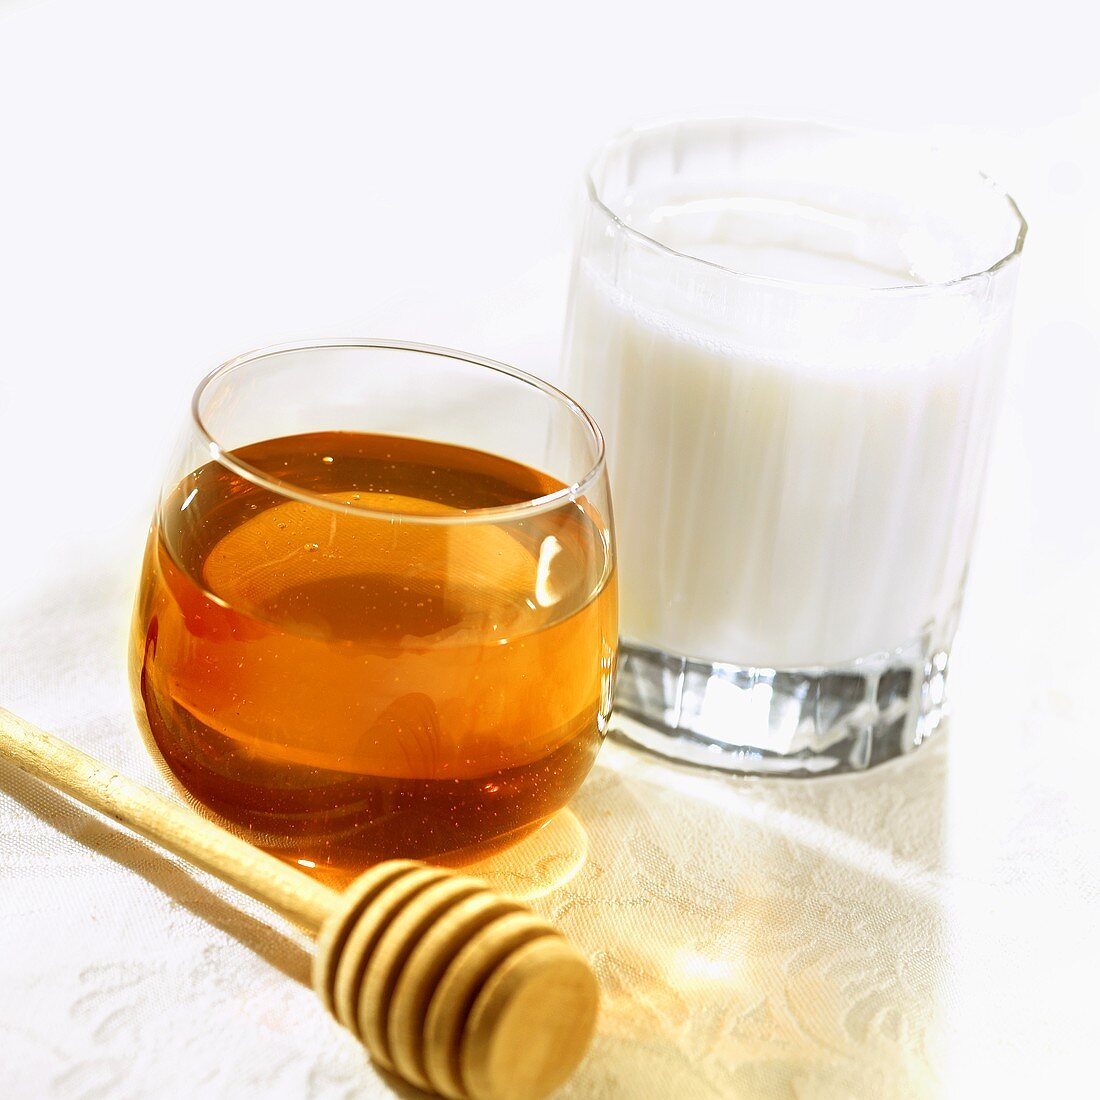 Honigglas, Honigheber und Milchglas